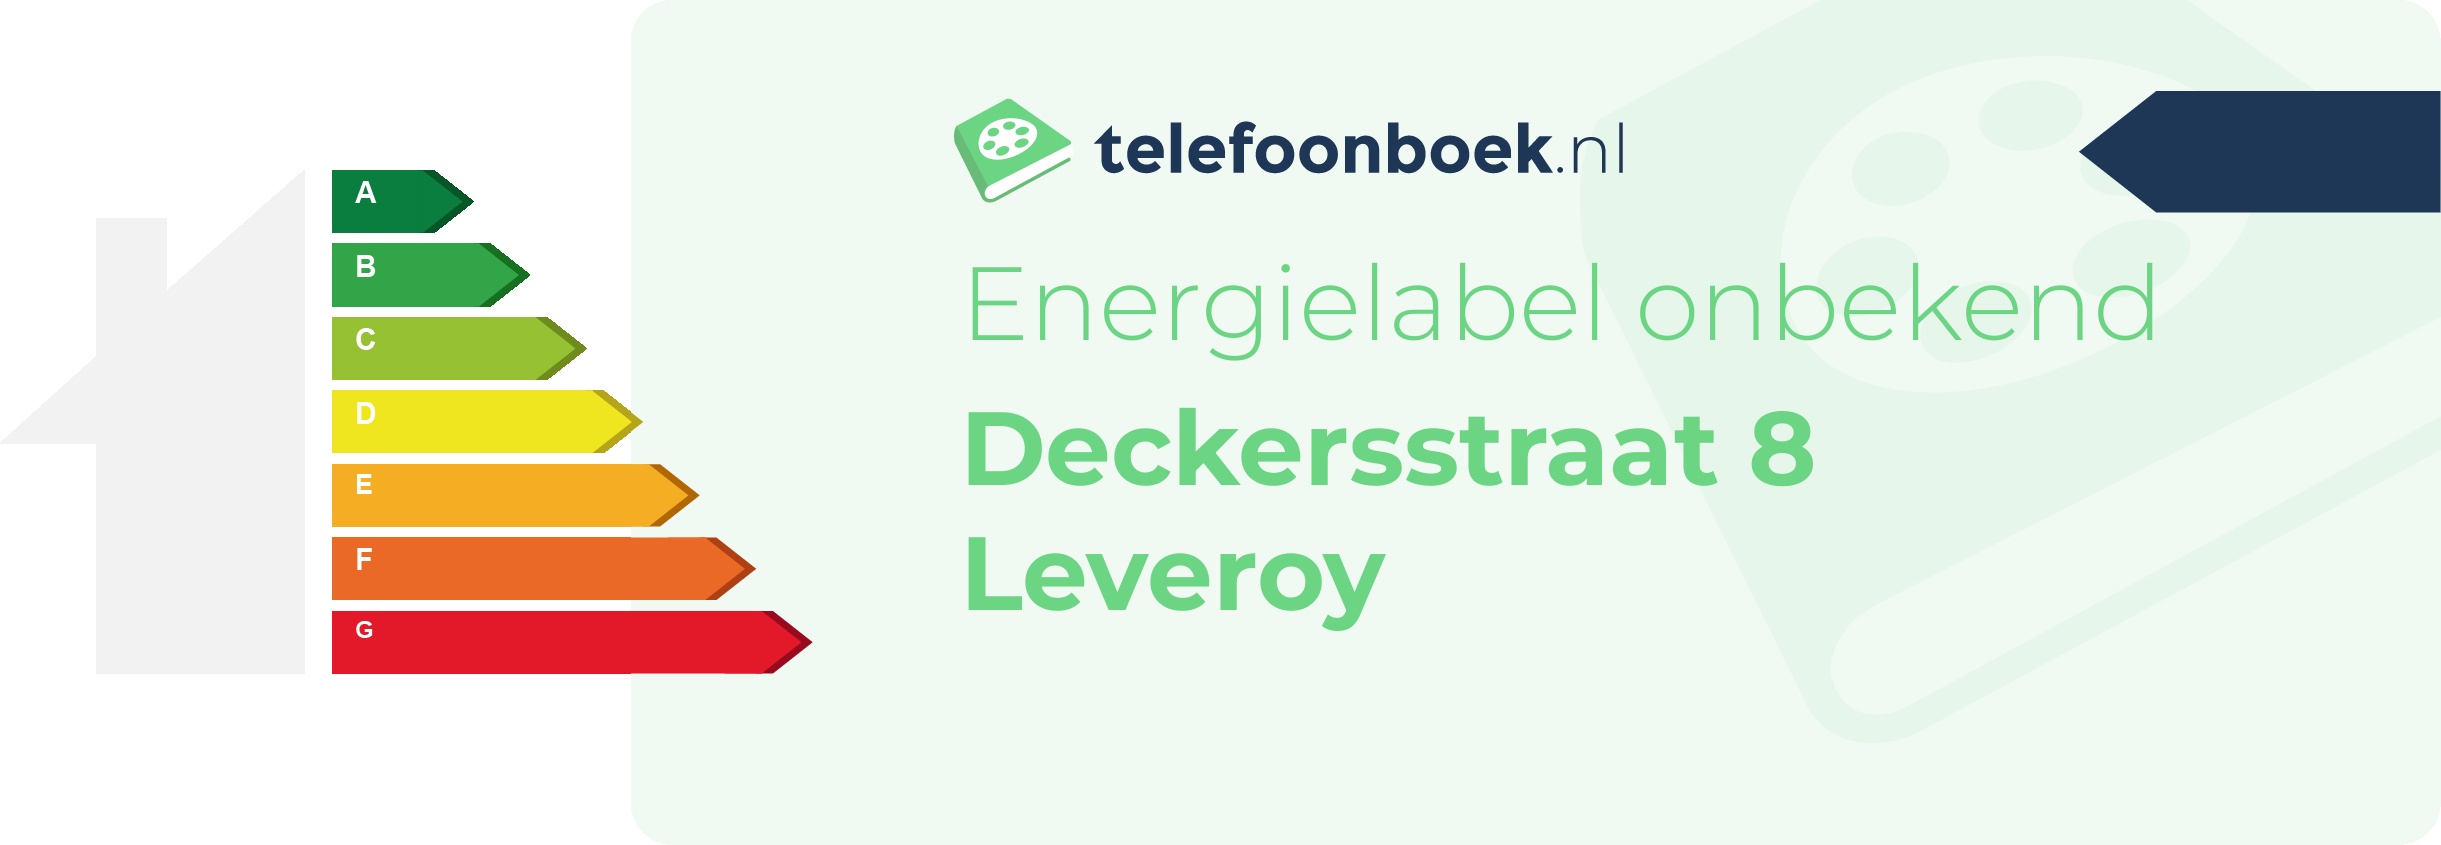 Energielabel Deckersstraat 8 Leveroy